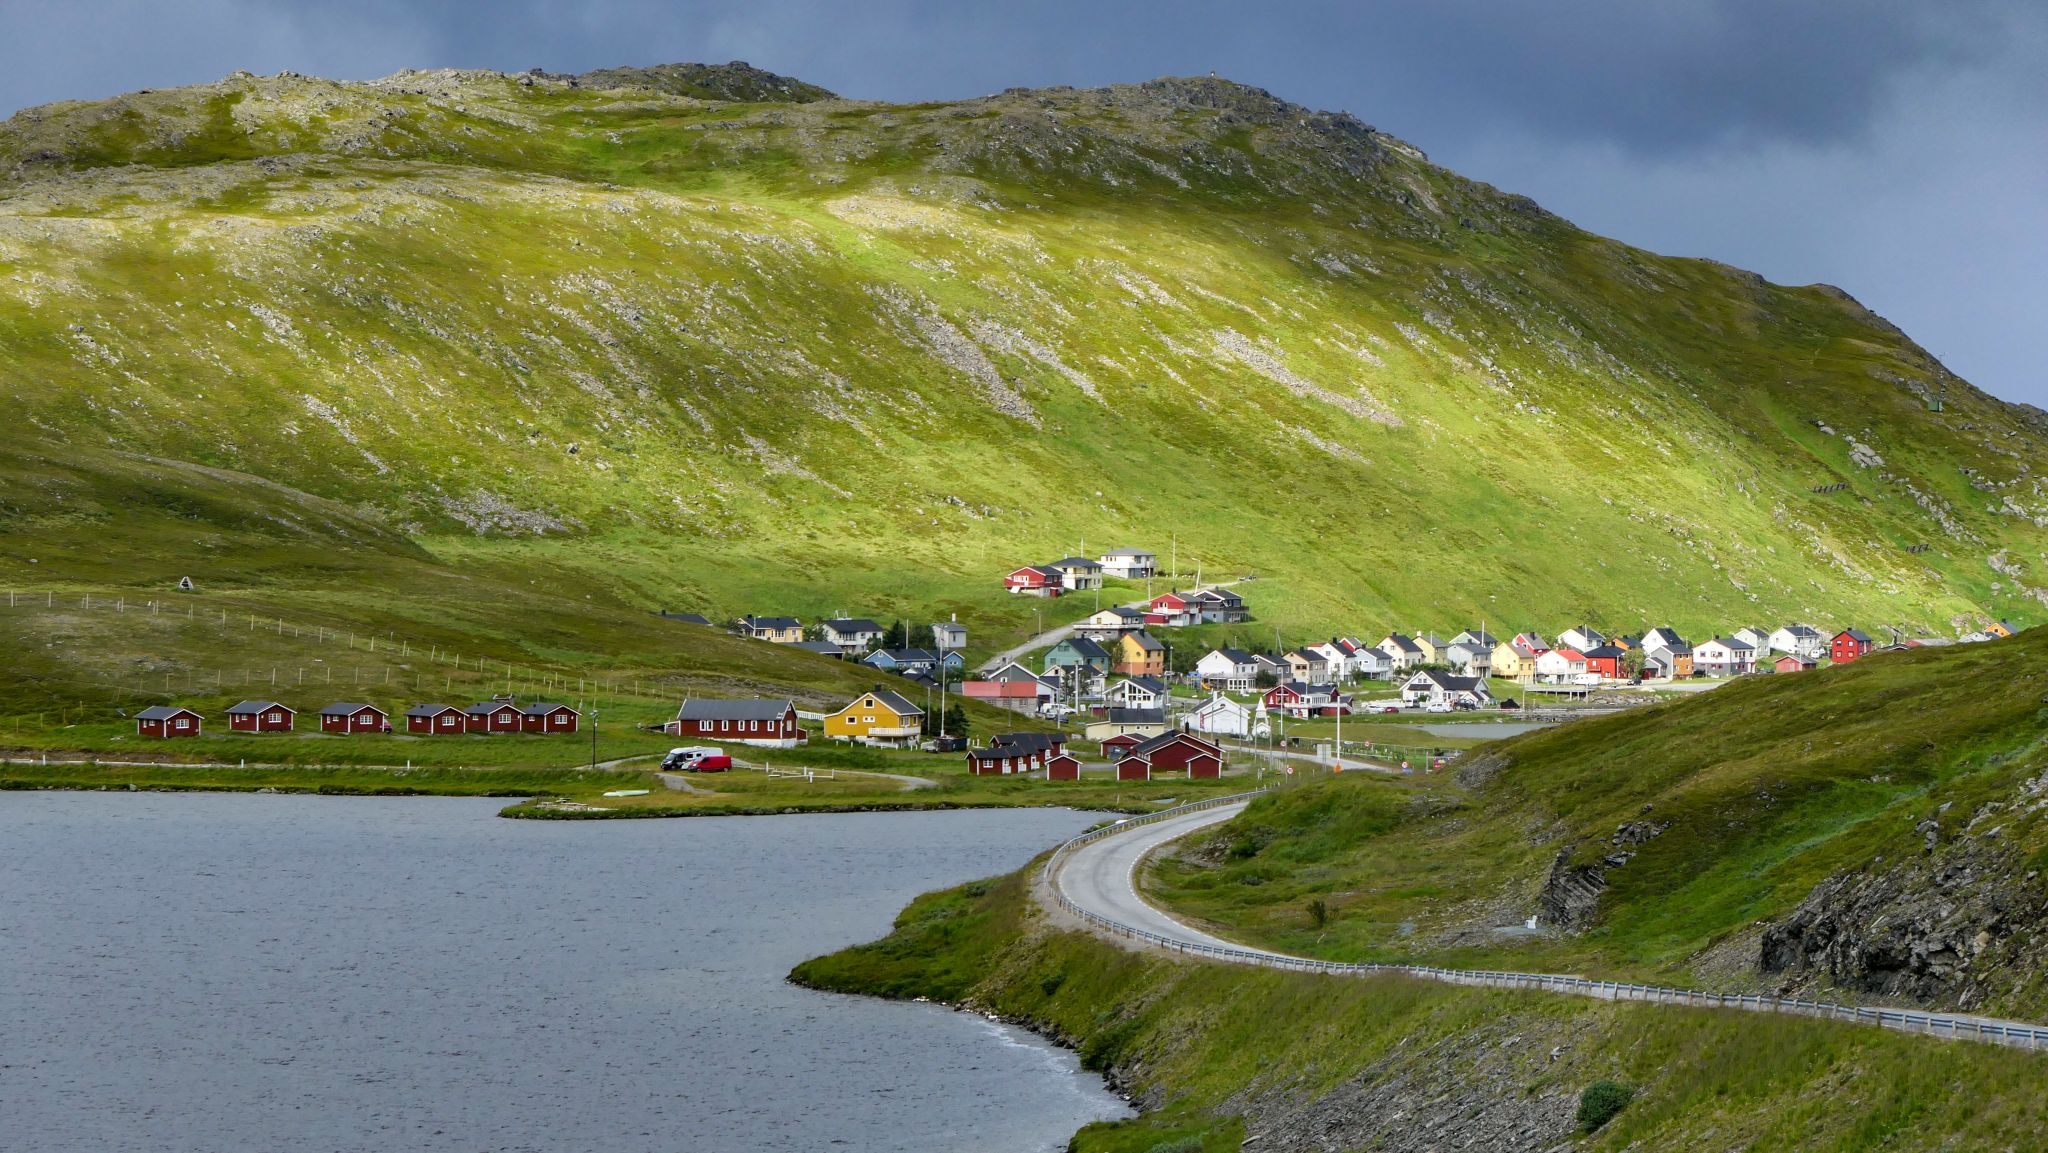 Die Dörfer in Norwegen sind wirklich wunderschön. So bunt! Dies ist ein Dorf bei Hammerfest, wo wir übernachten werden.